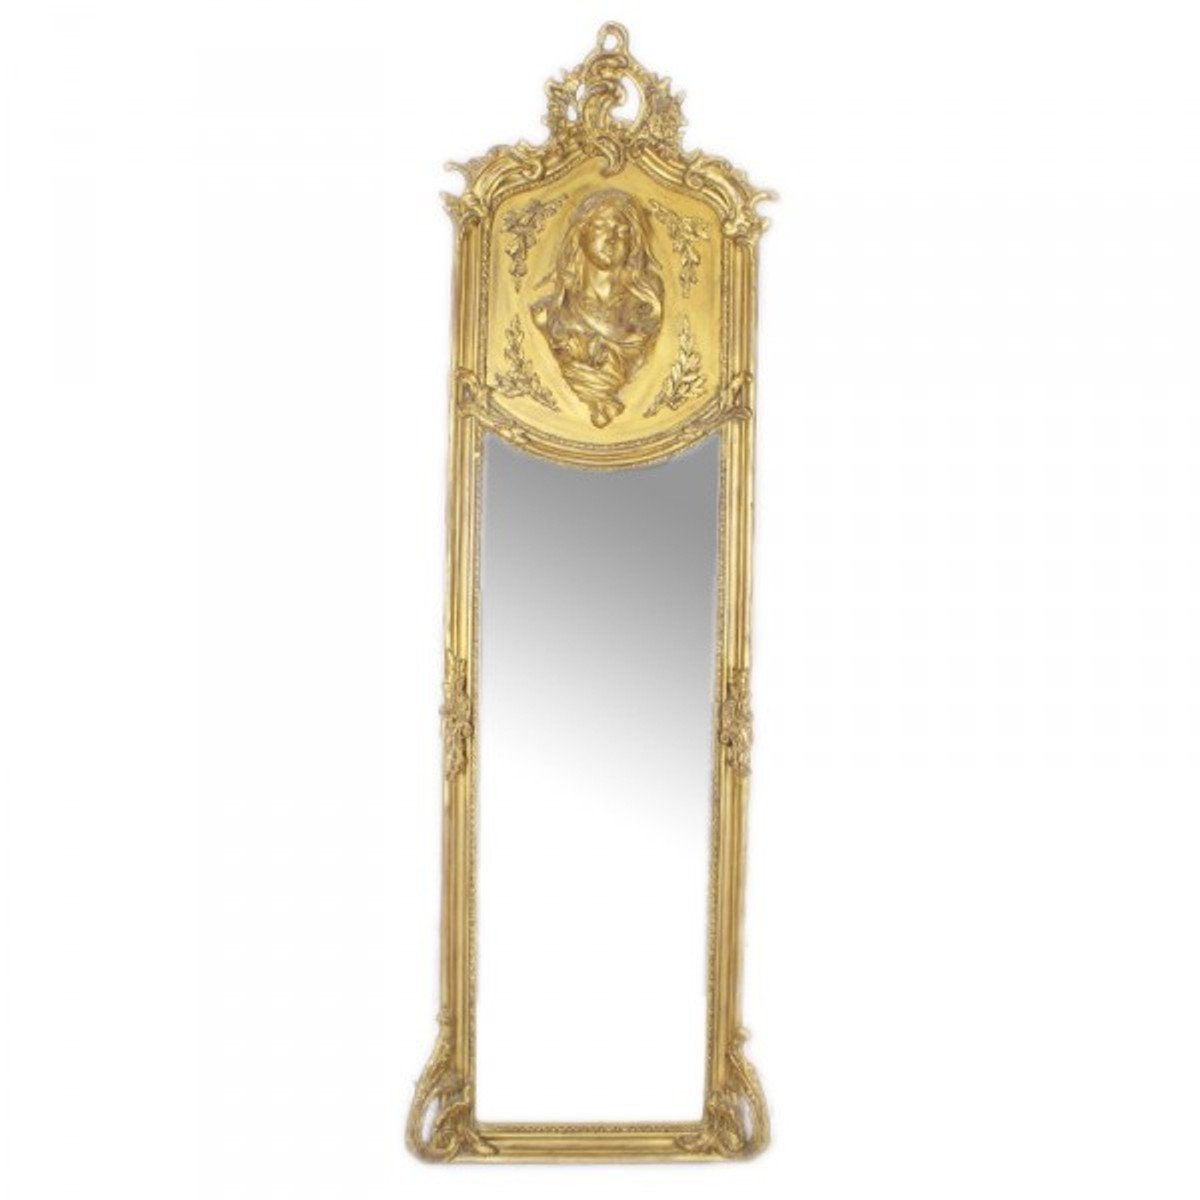 Casa Padrino Barockspiegel Luxus Barock Wandspiegel Madonna Gold 175 x 55 cm - Massiv und Schwer - Antik Stil Spiegel